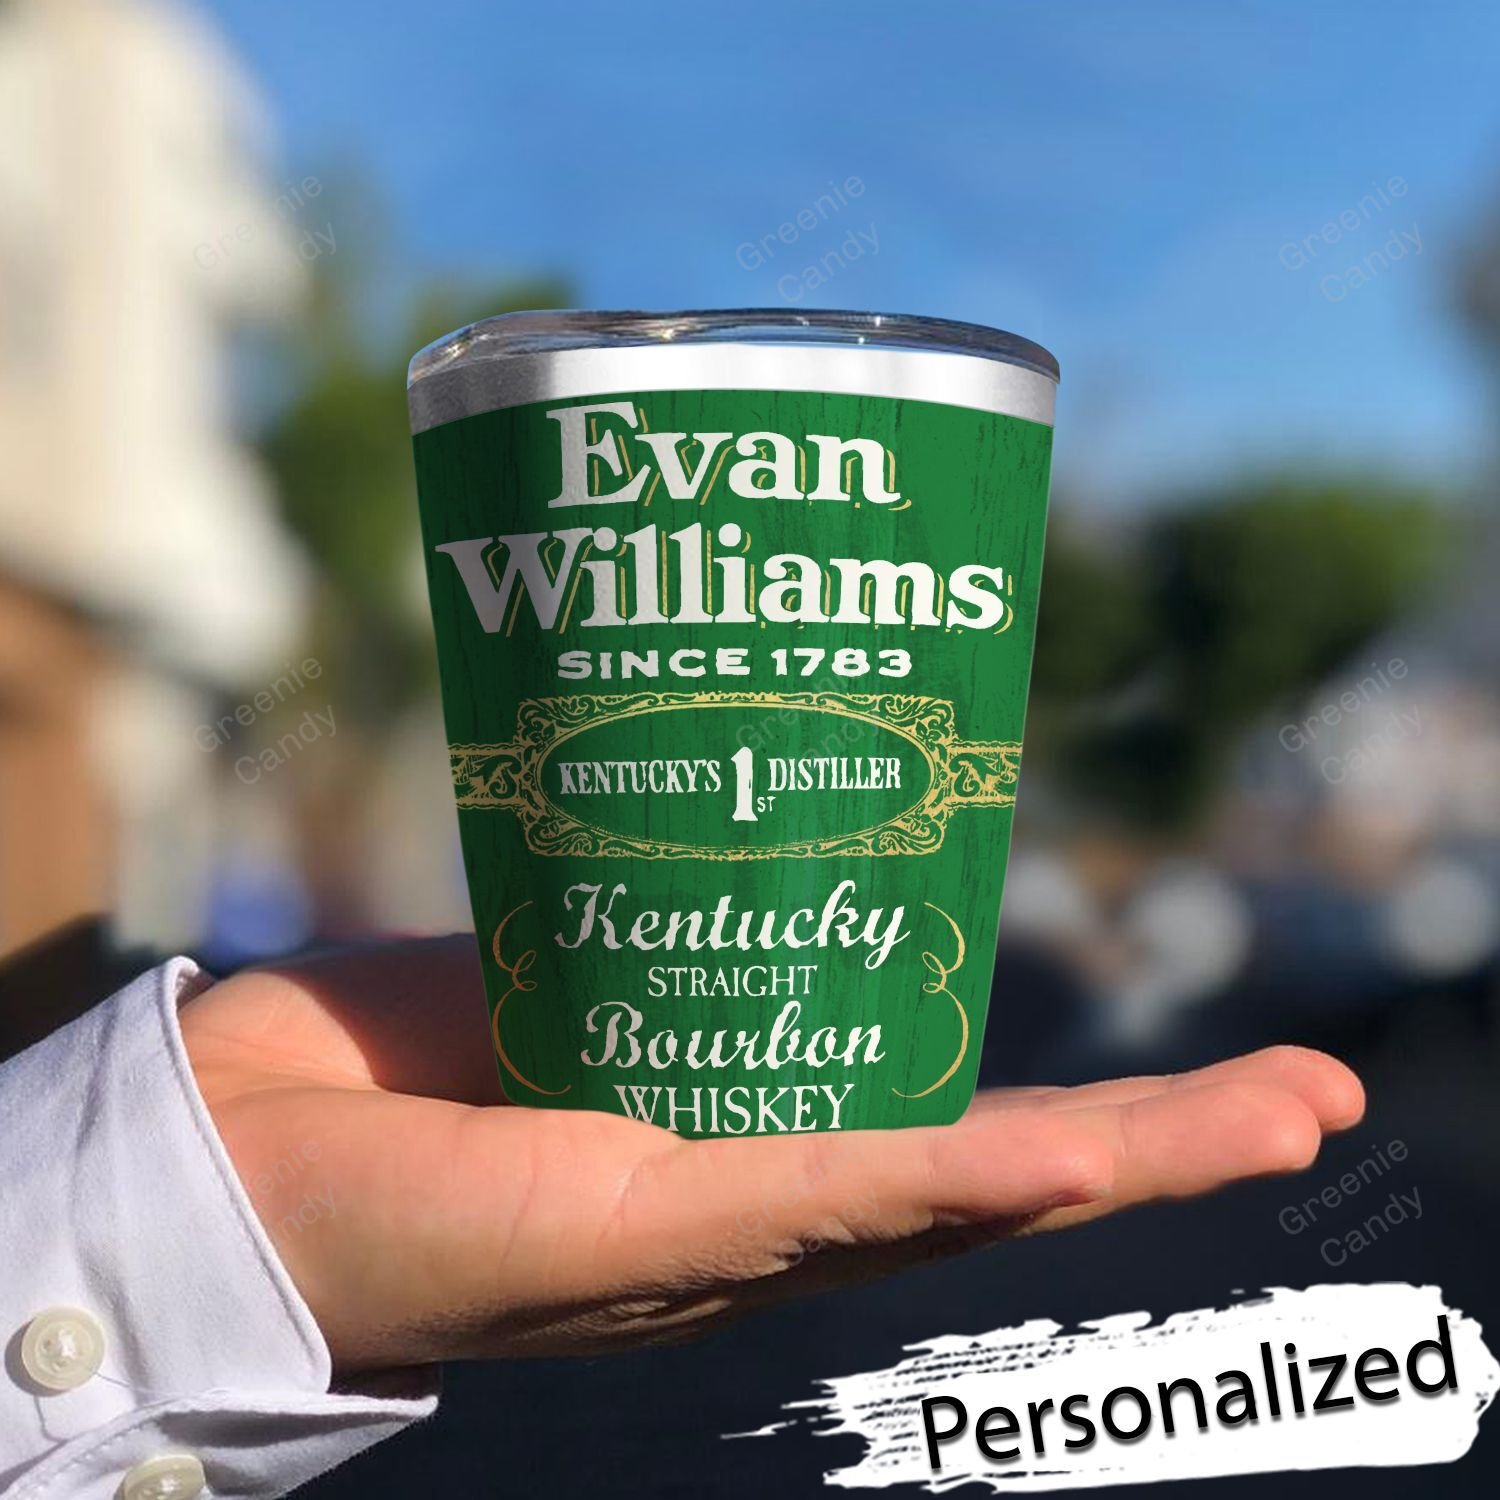 Personalized_Evan_Williams_Whiskey_Tumbler_1